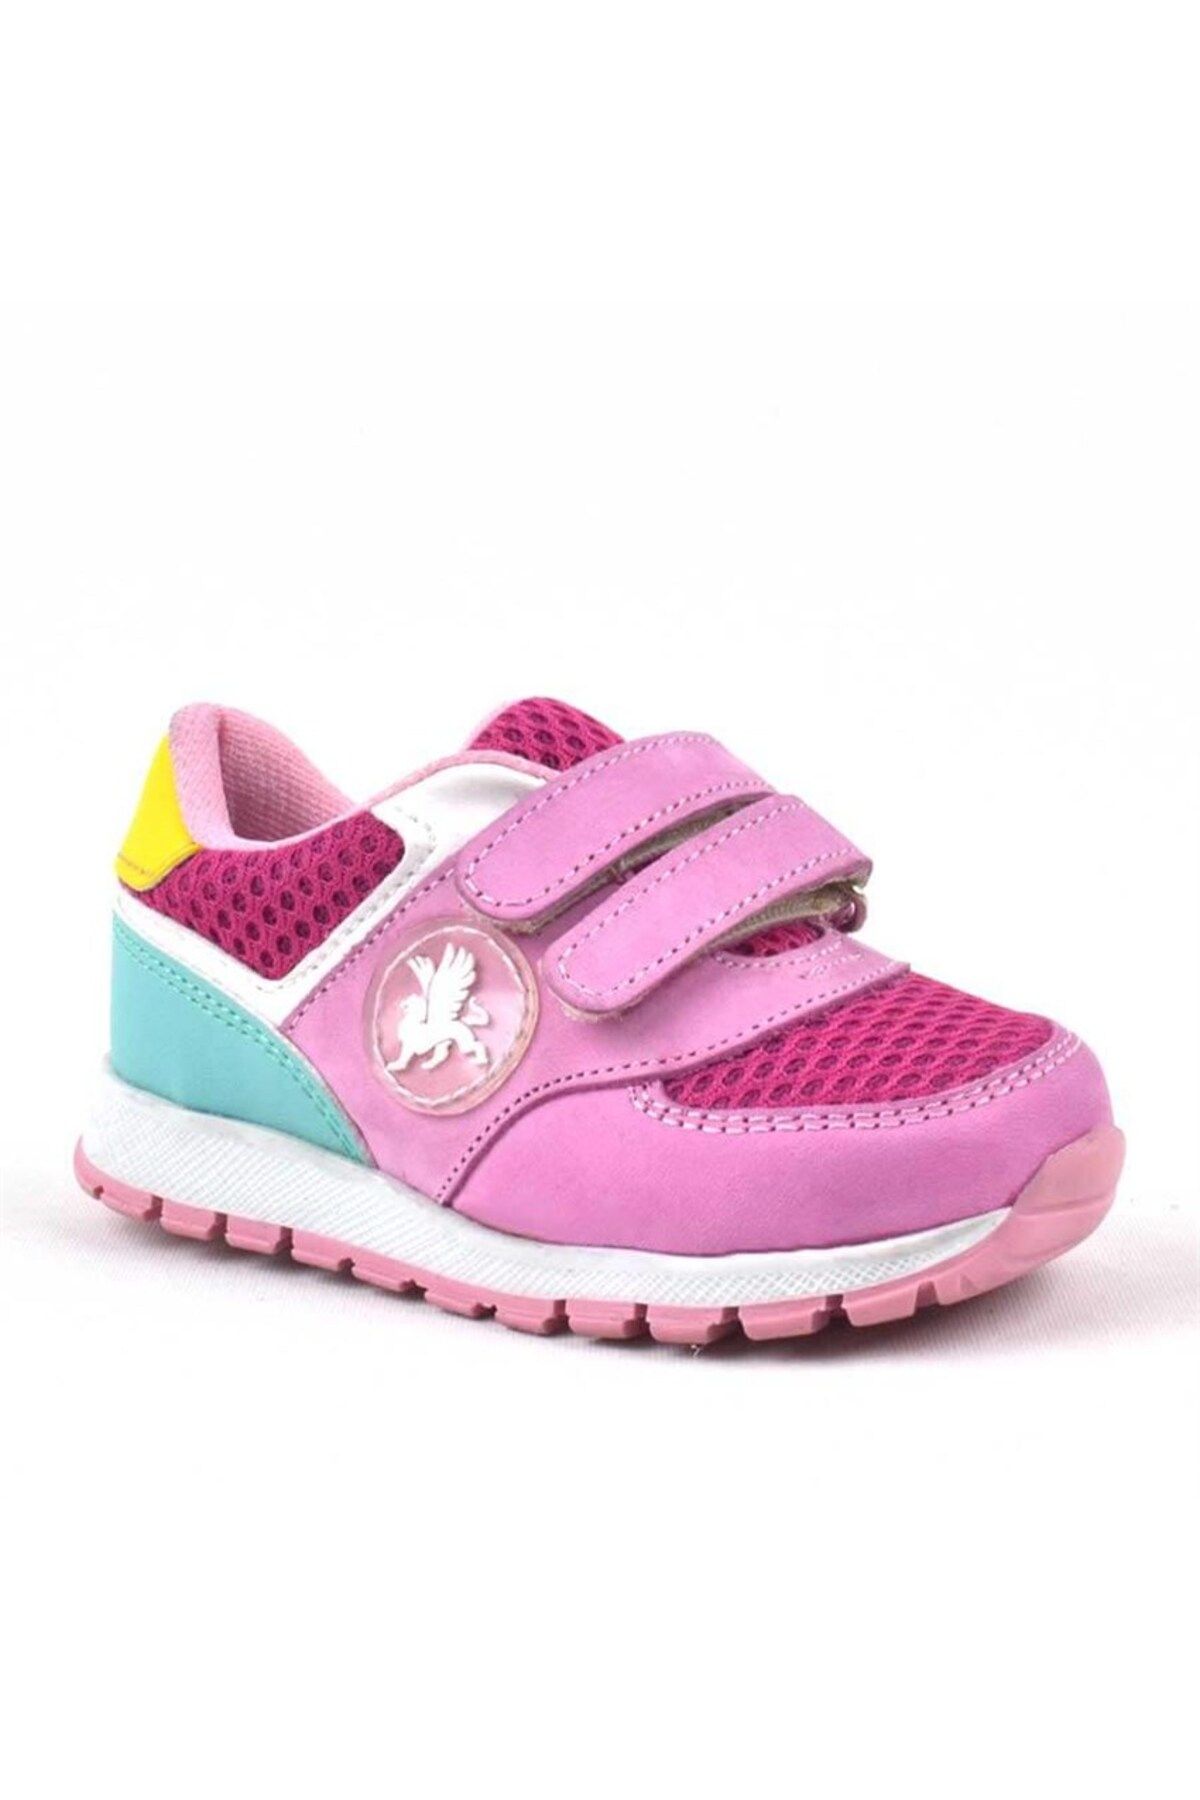 Rakerplus Hakiki Deri Pembe Cırtlı Kız Bebek Spor Ayakkabı